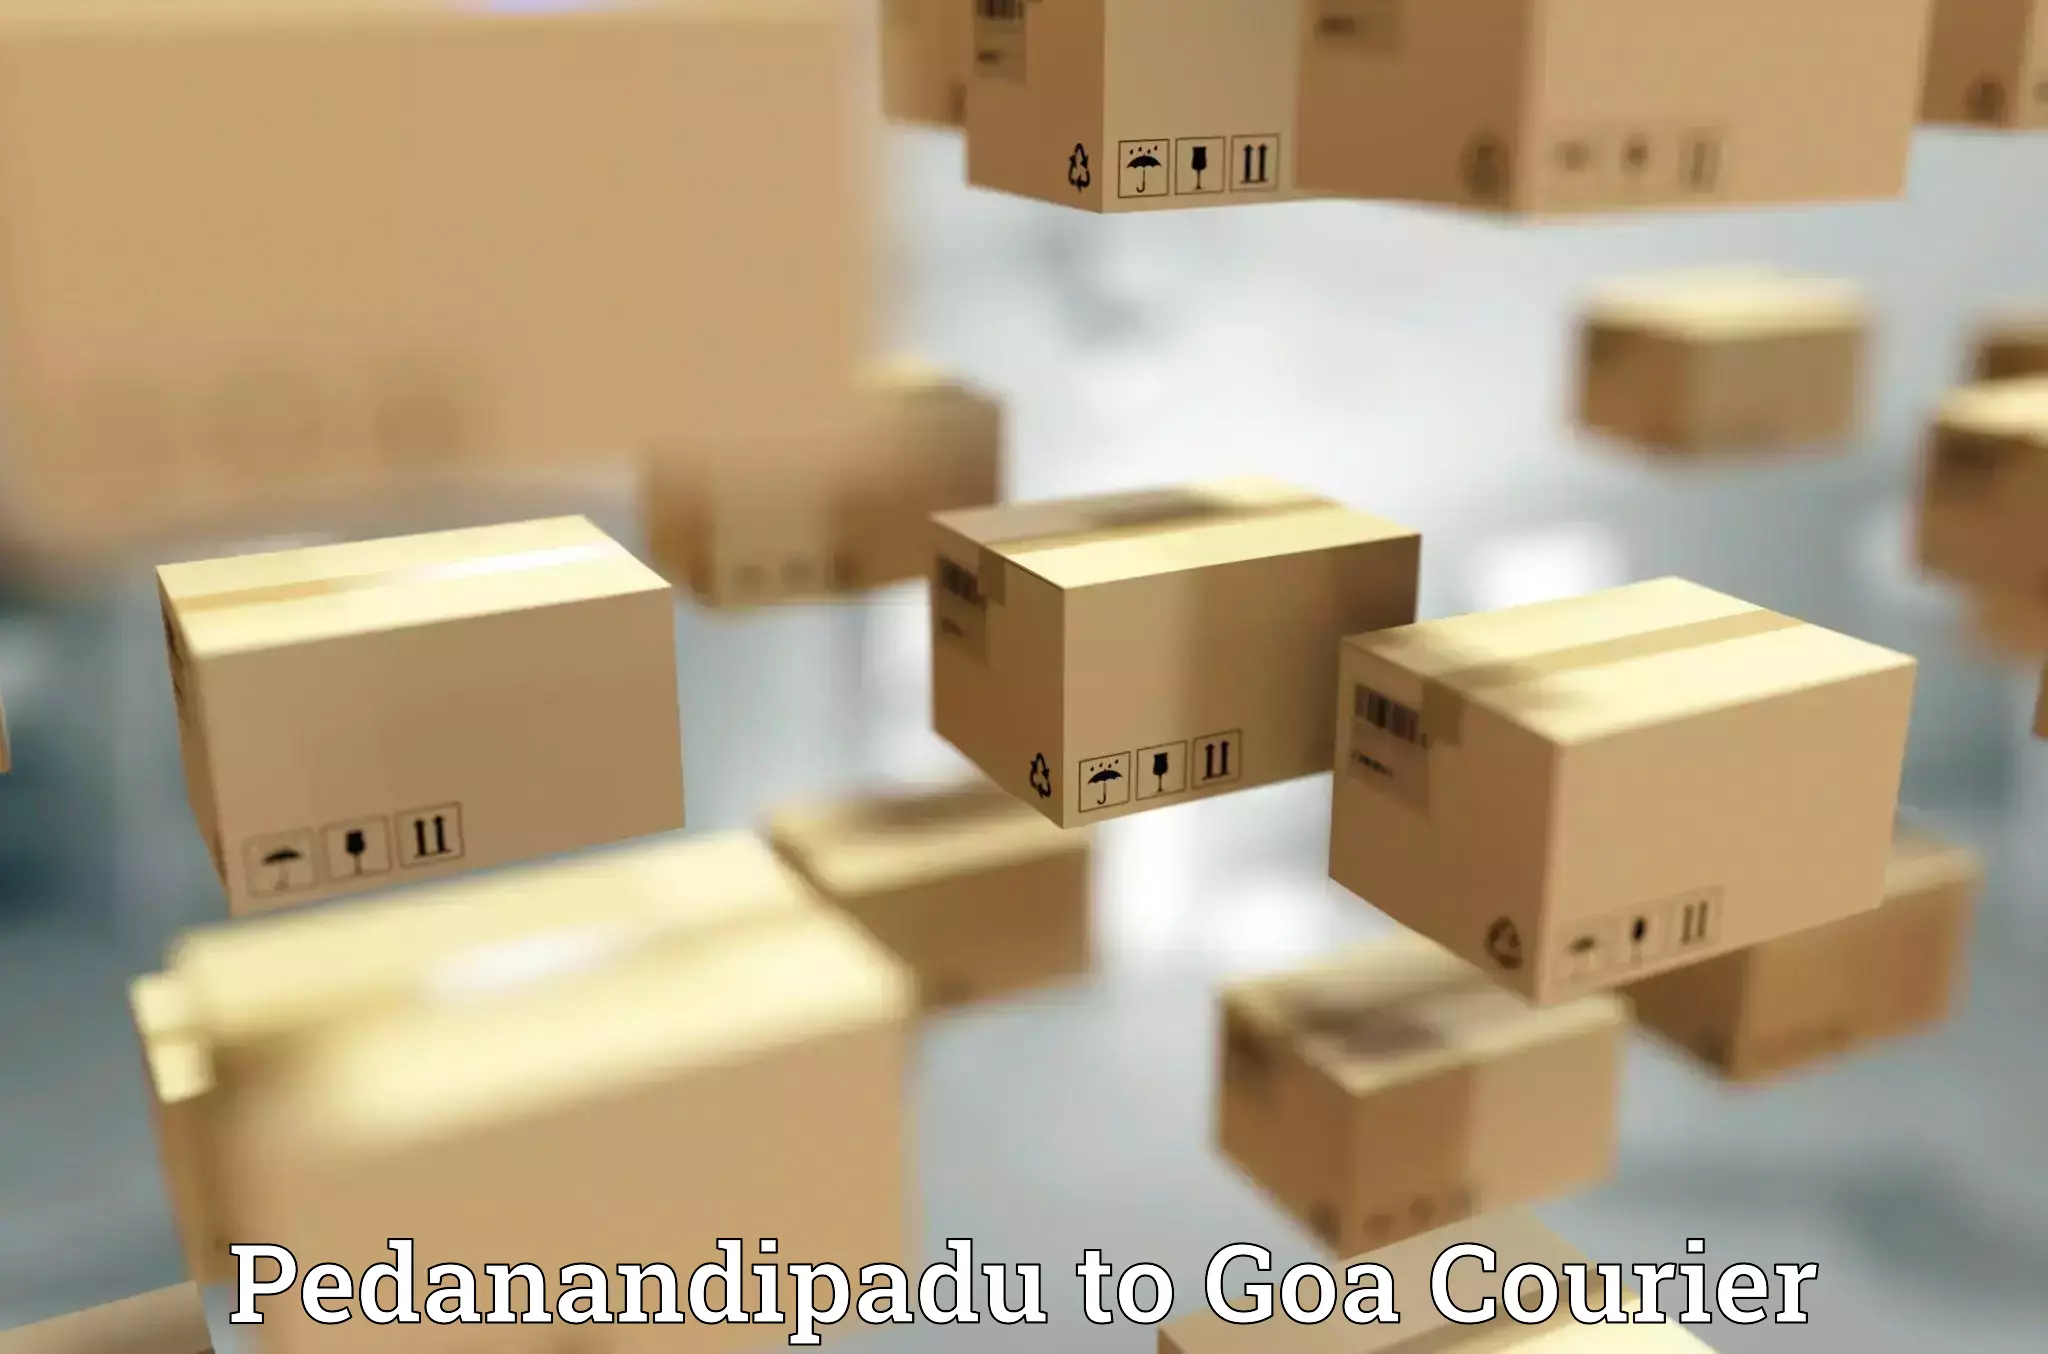 Optimized shipping services Pedanandipadu to IIT Goa